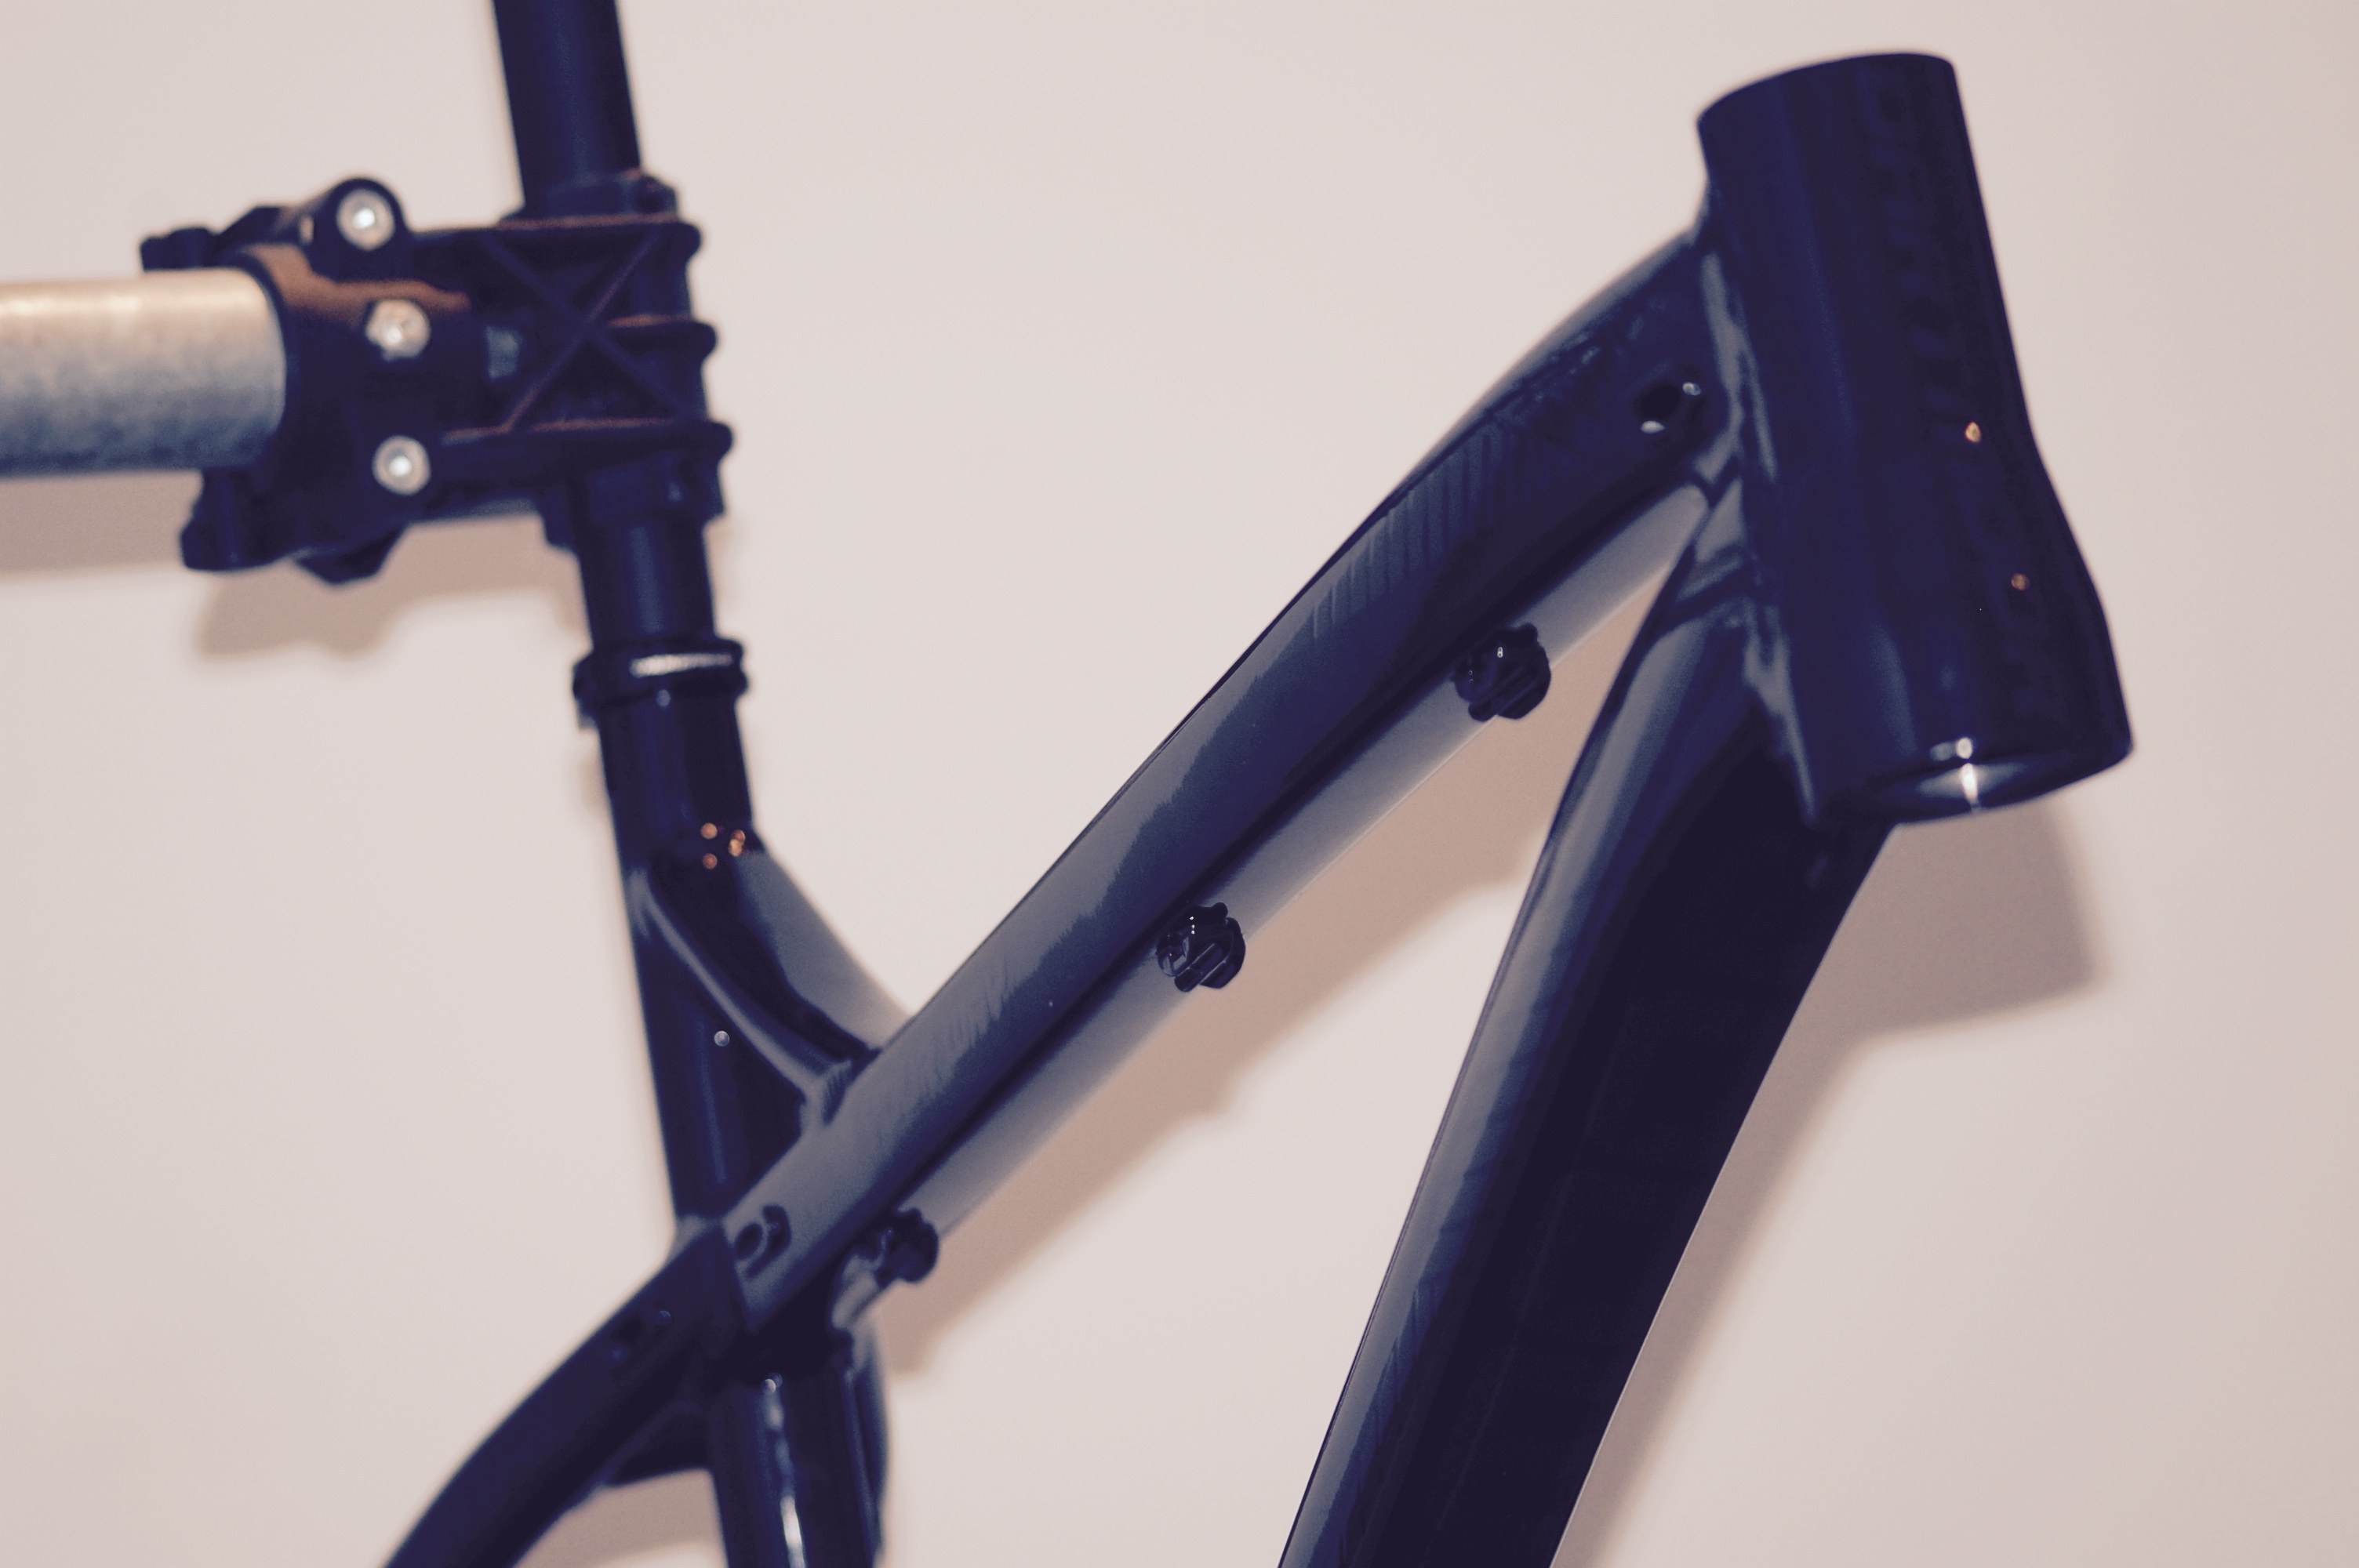 Frameset and forks – Building a bike, Part 2